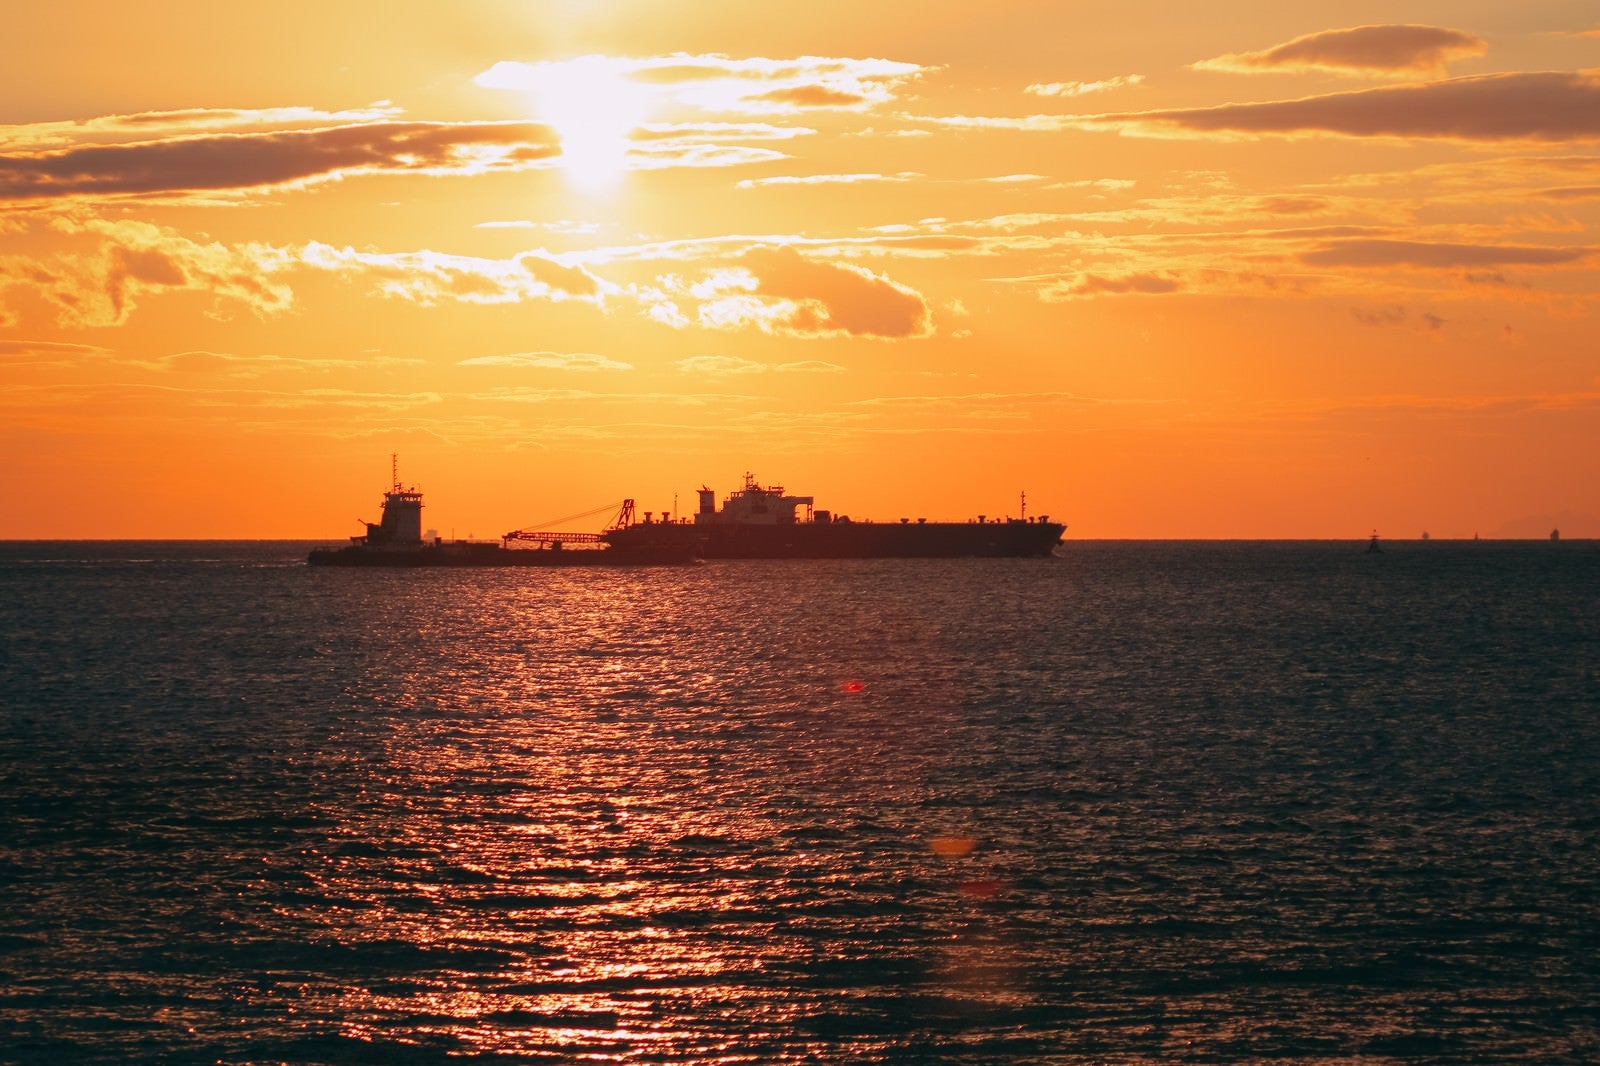 「夕焼けに染まるさざ波と船のシルエット」の写真